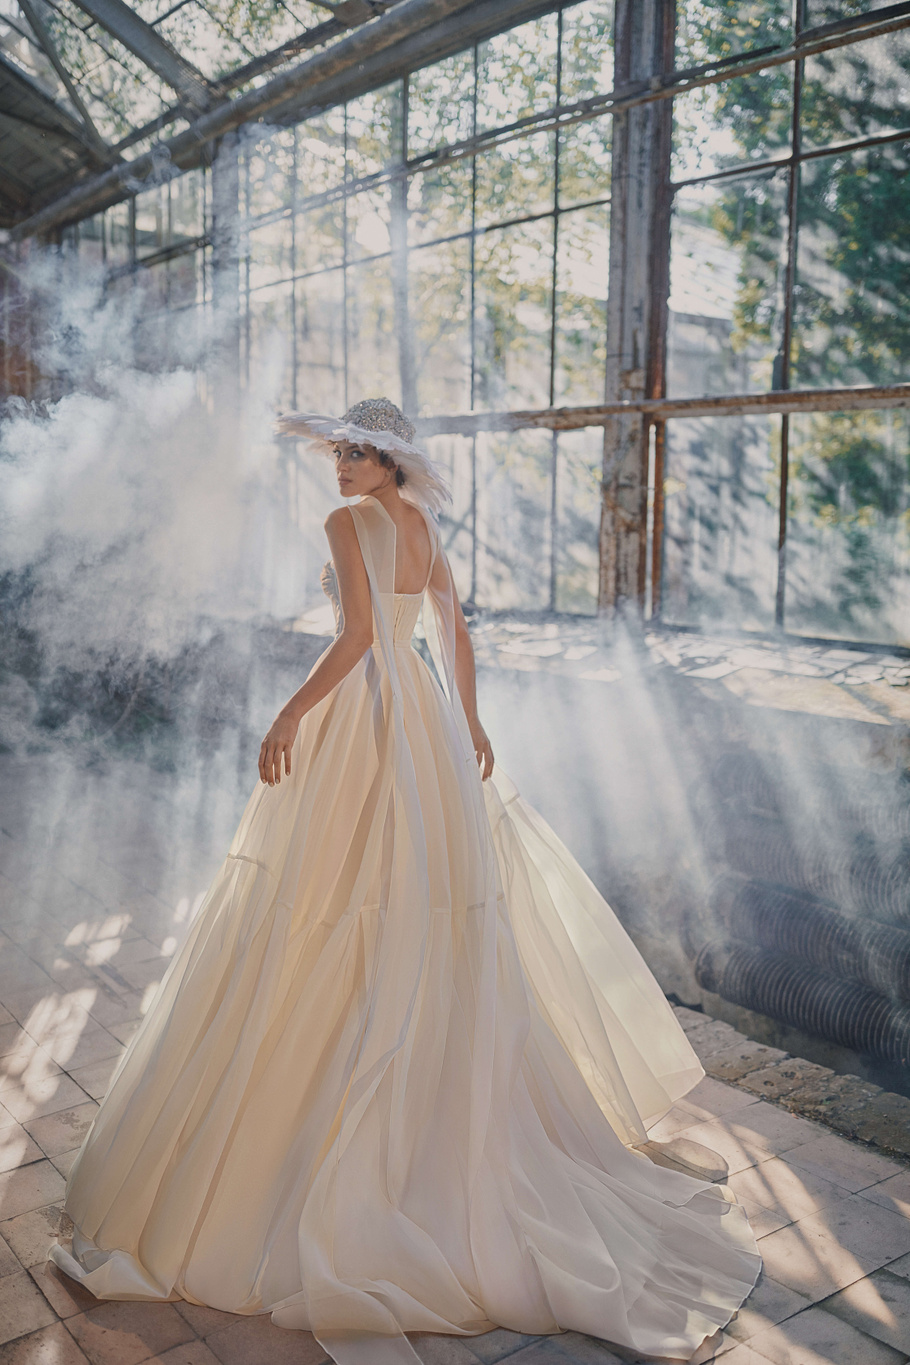 Купить свадебное платье «Элен» Анже Этуаль из коллекции Леди Перл 2021 года в салоне «Мэри Трюфель»